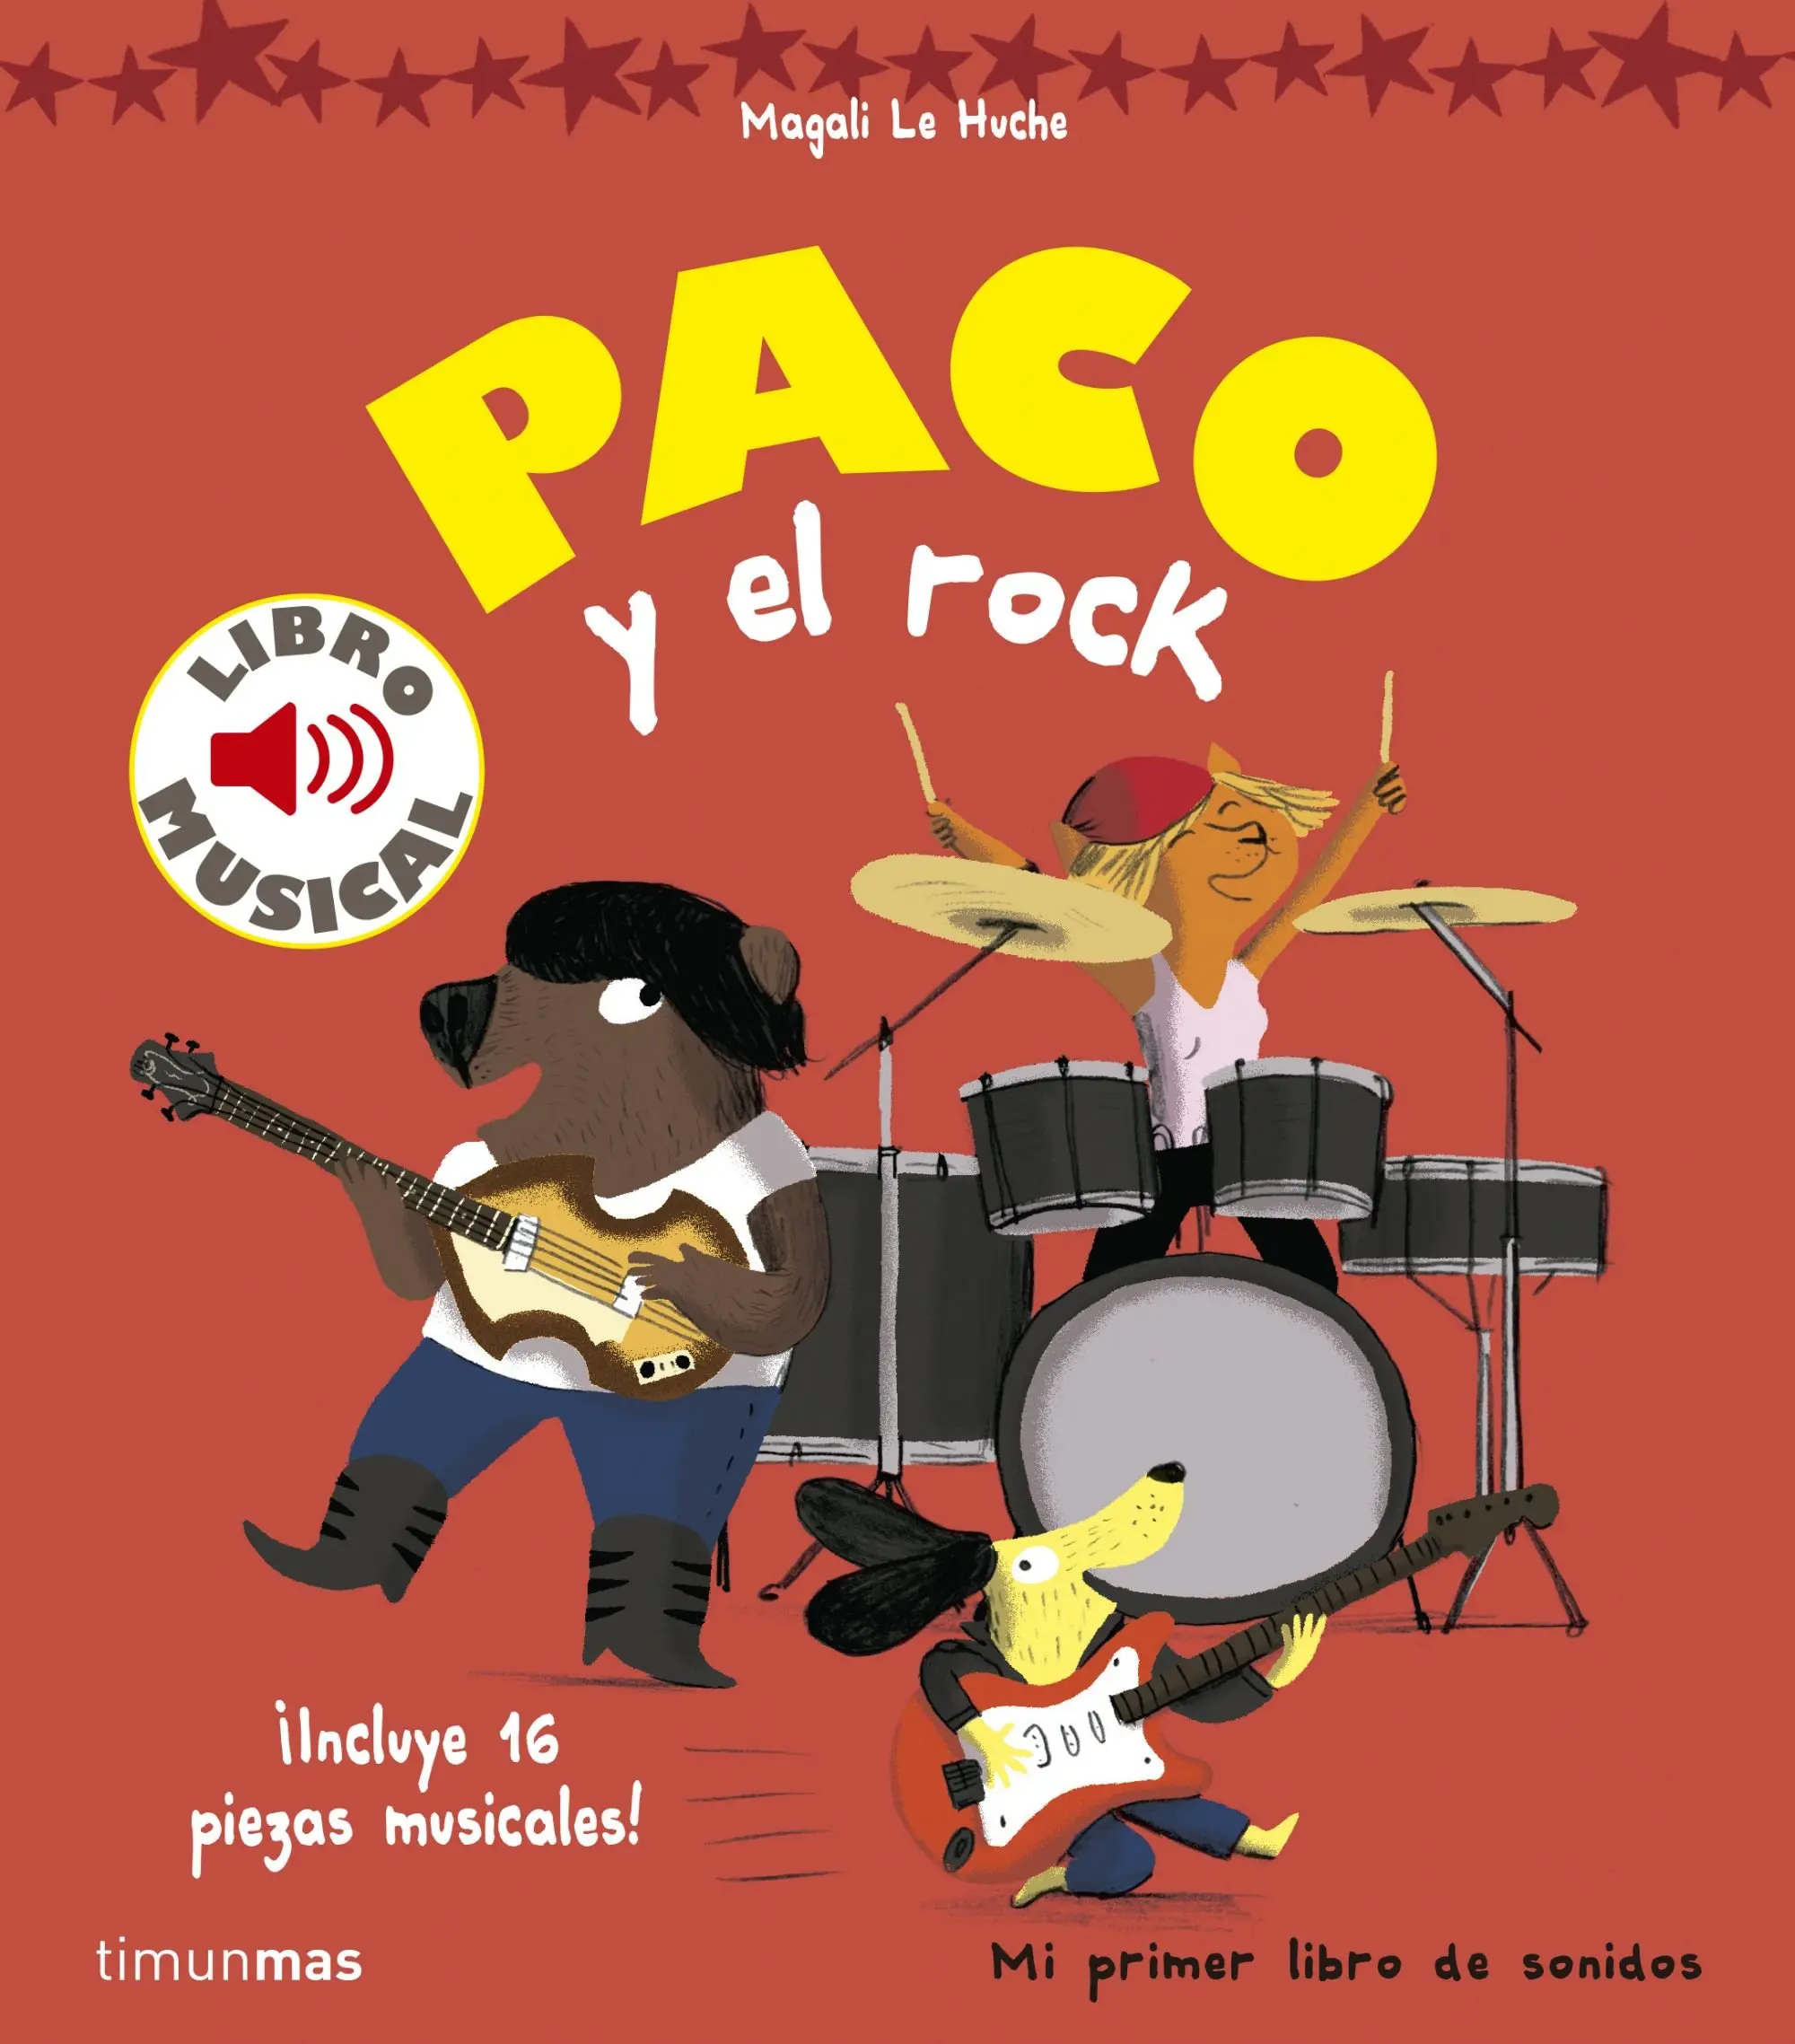 Paco y el rock. Libro musical. De Magalí Le Huche. Editorial Planeta.